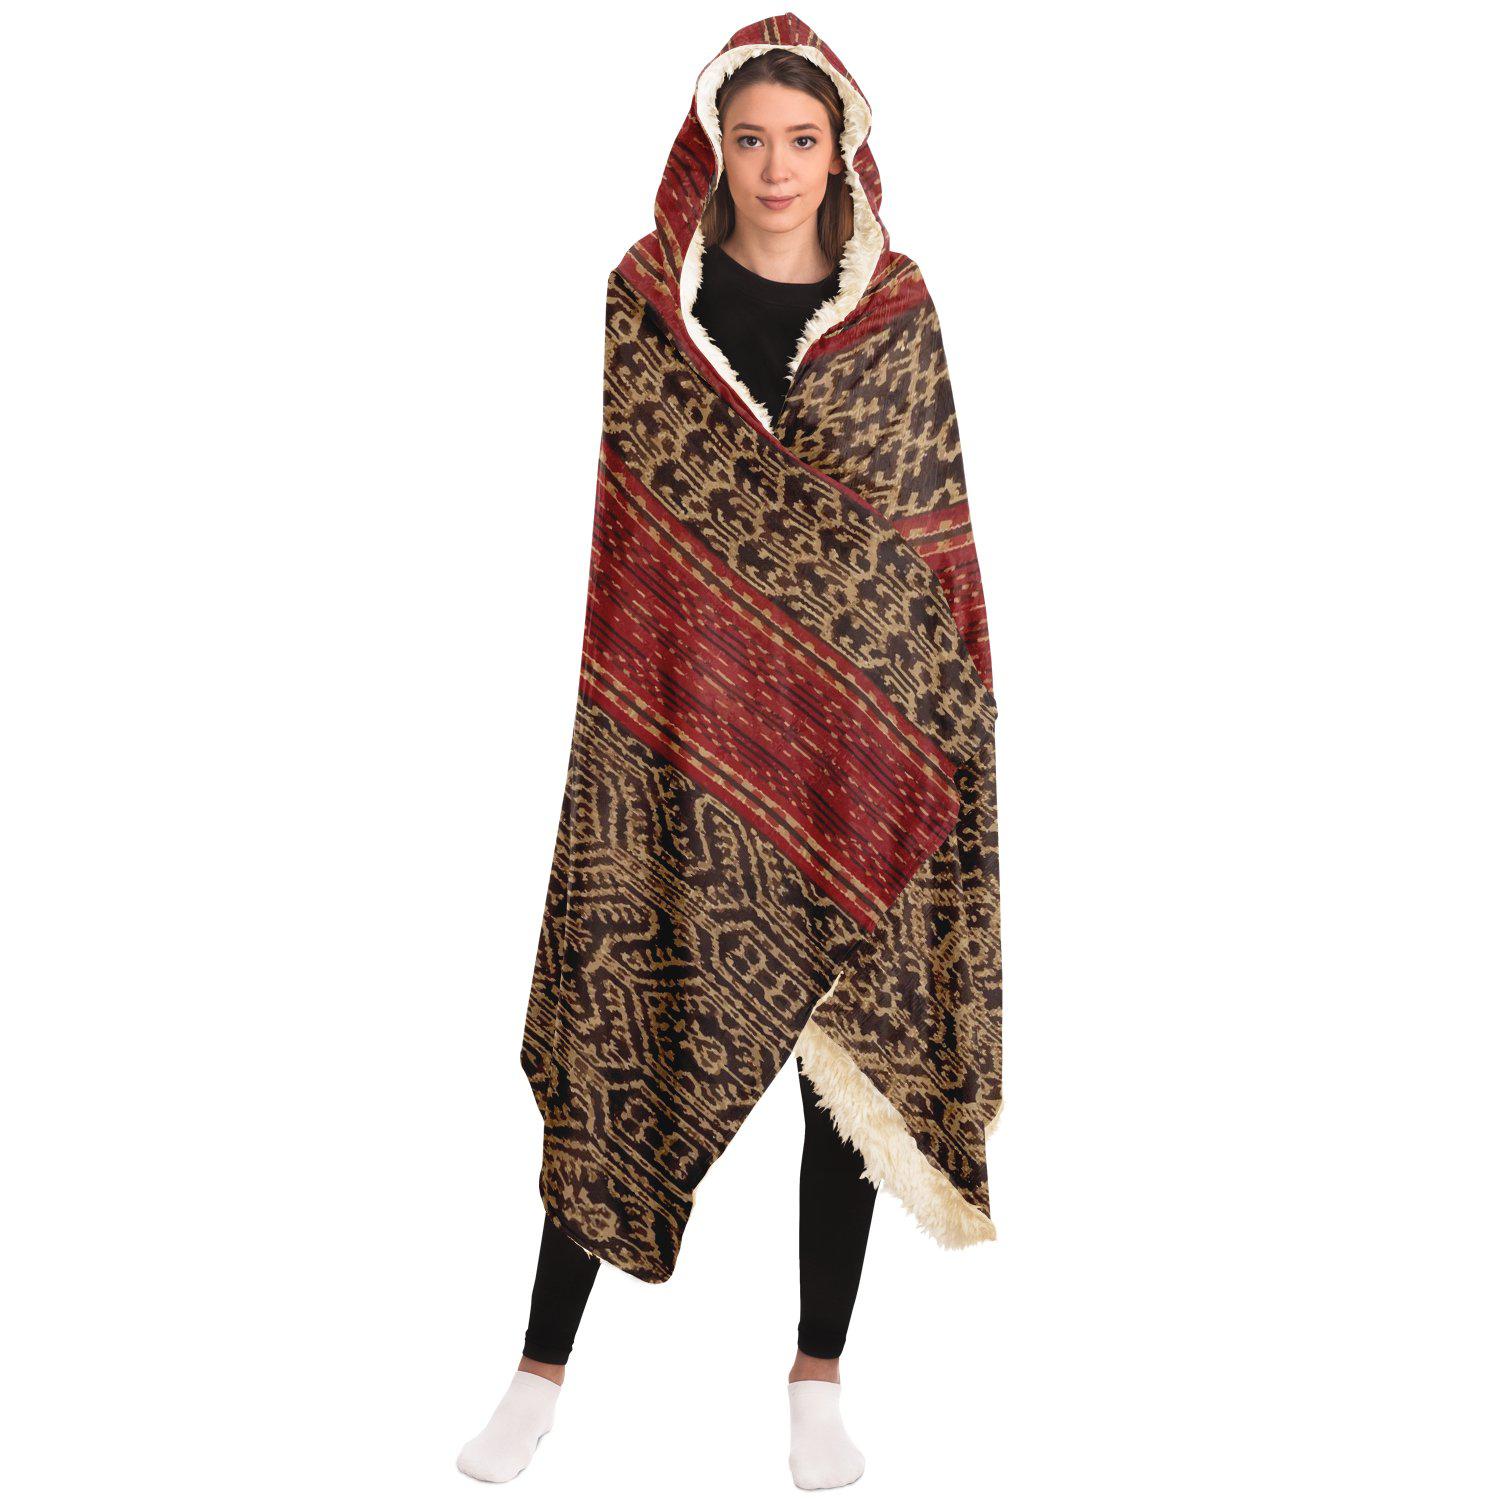 Hooded Blanket - AOP Hooded Blanket, Dayak Culture Ikat Design (Borneo)